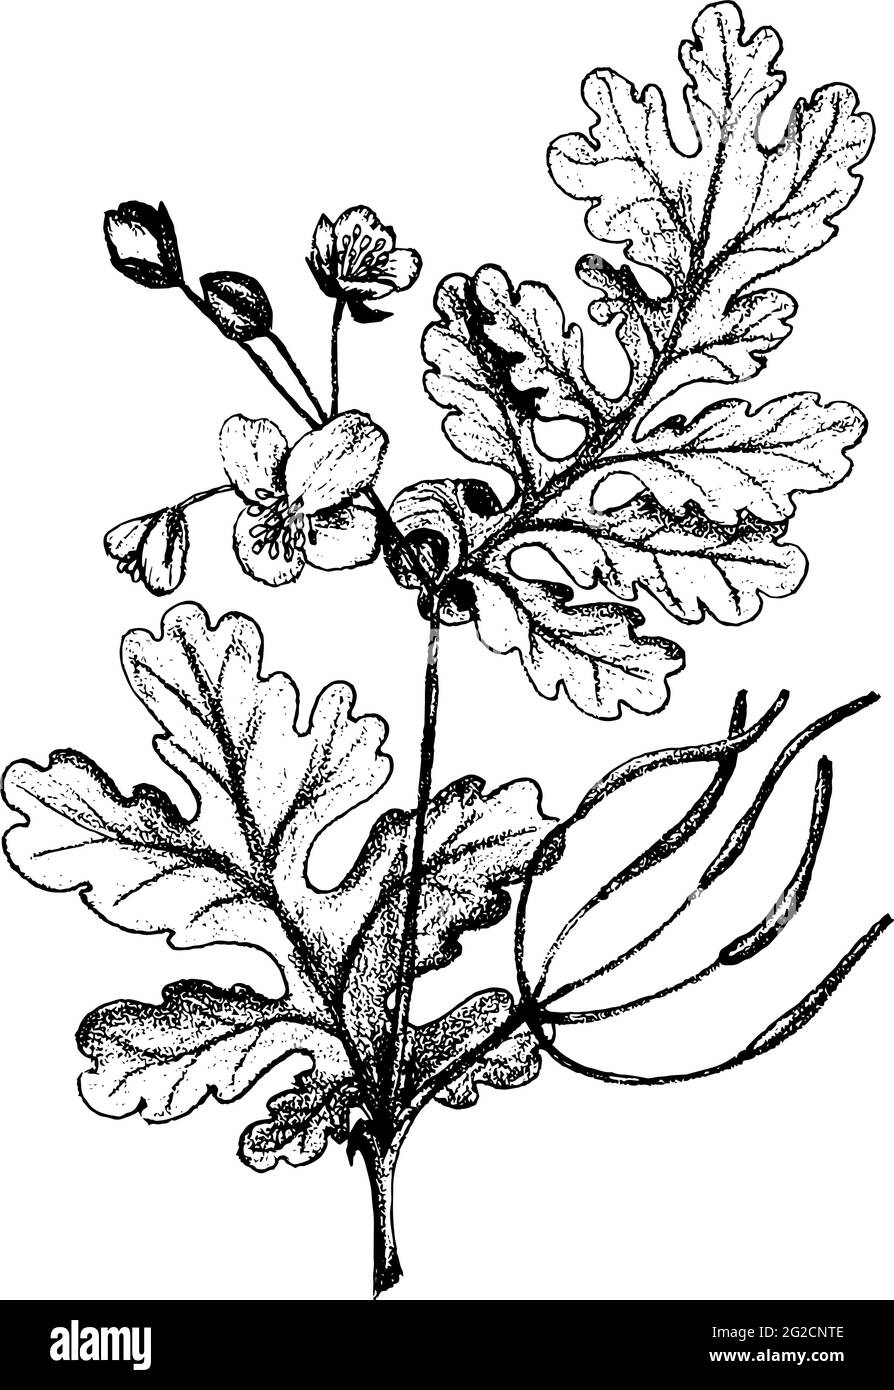 Illustration botanique d'esquisse de célandine plus grande à la main. Illustration vectorielle. Herbes médicales. Isolé sur blanc Illustration de Vecteur